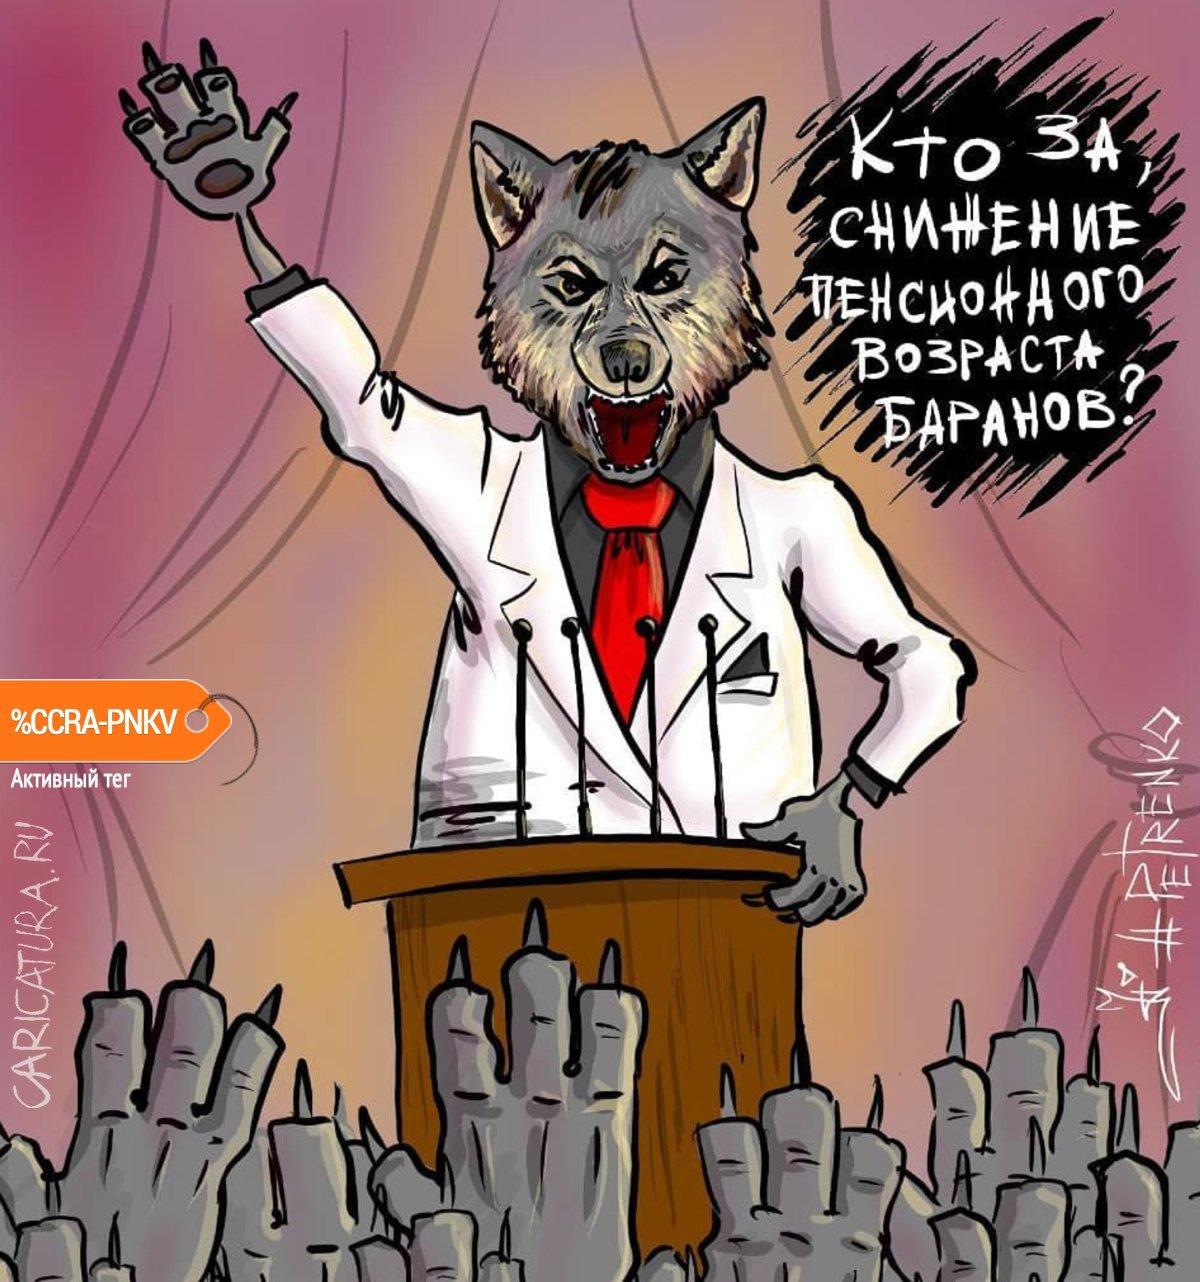 Карикатура "Пора сокращать пенсионный возраст баранов...", Андрей Петренко